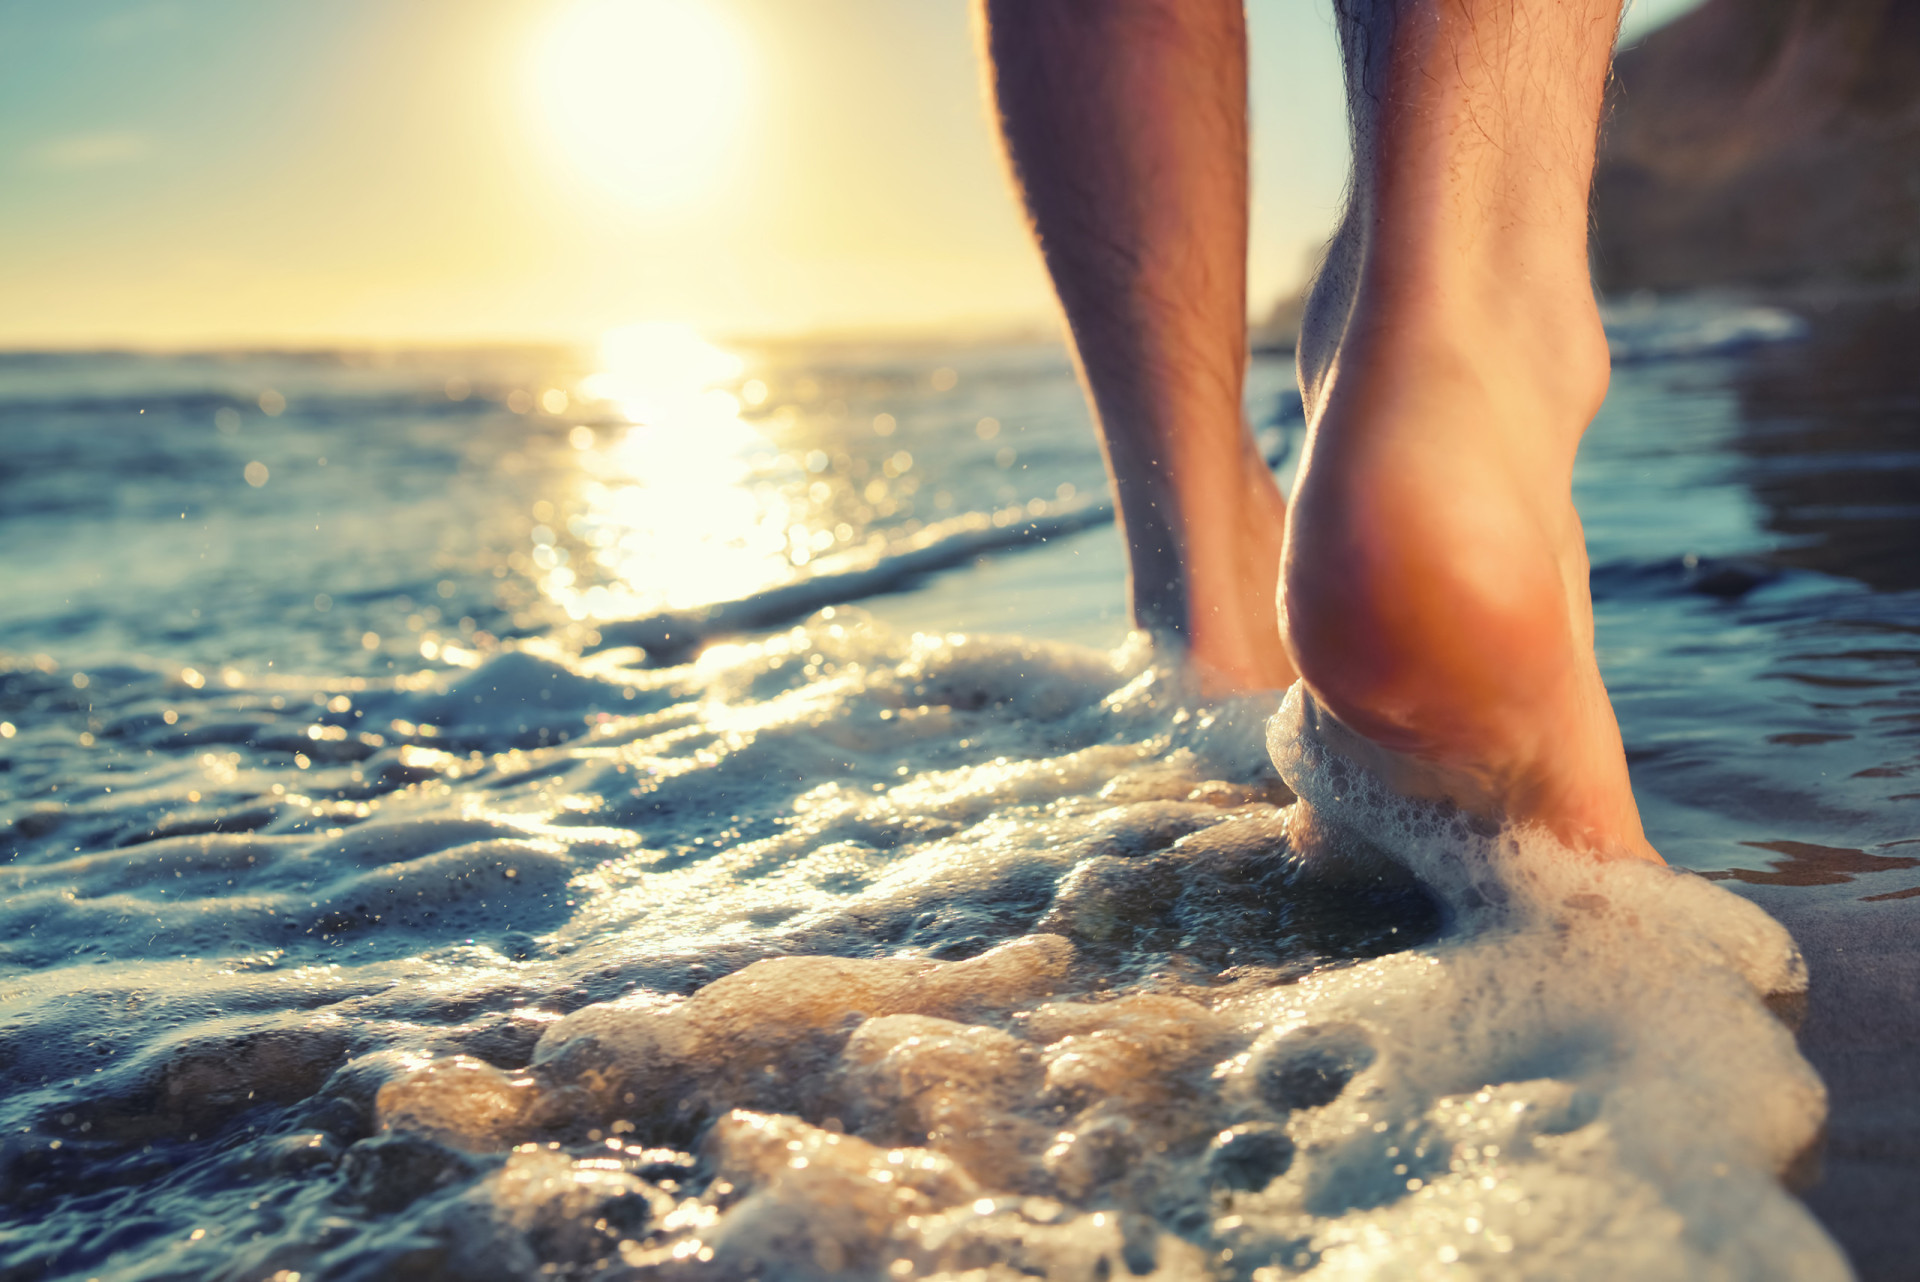 <p>Être à la plage signifie généralement marcher pieds nus. C'est l'occasion d'essayer le <em>grounding</em>, qui consiste à marcher pieds nus dans la nature et à se connecter à la terre.</p>